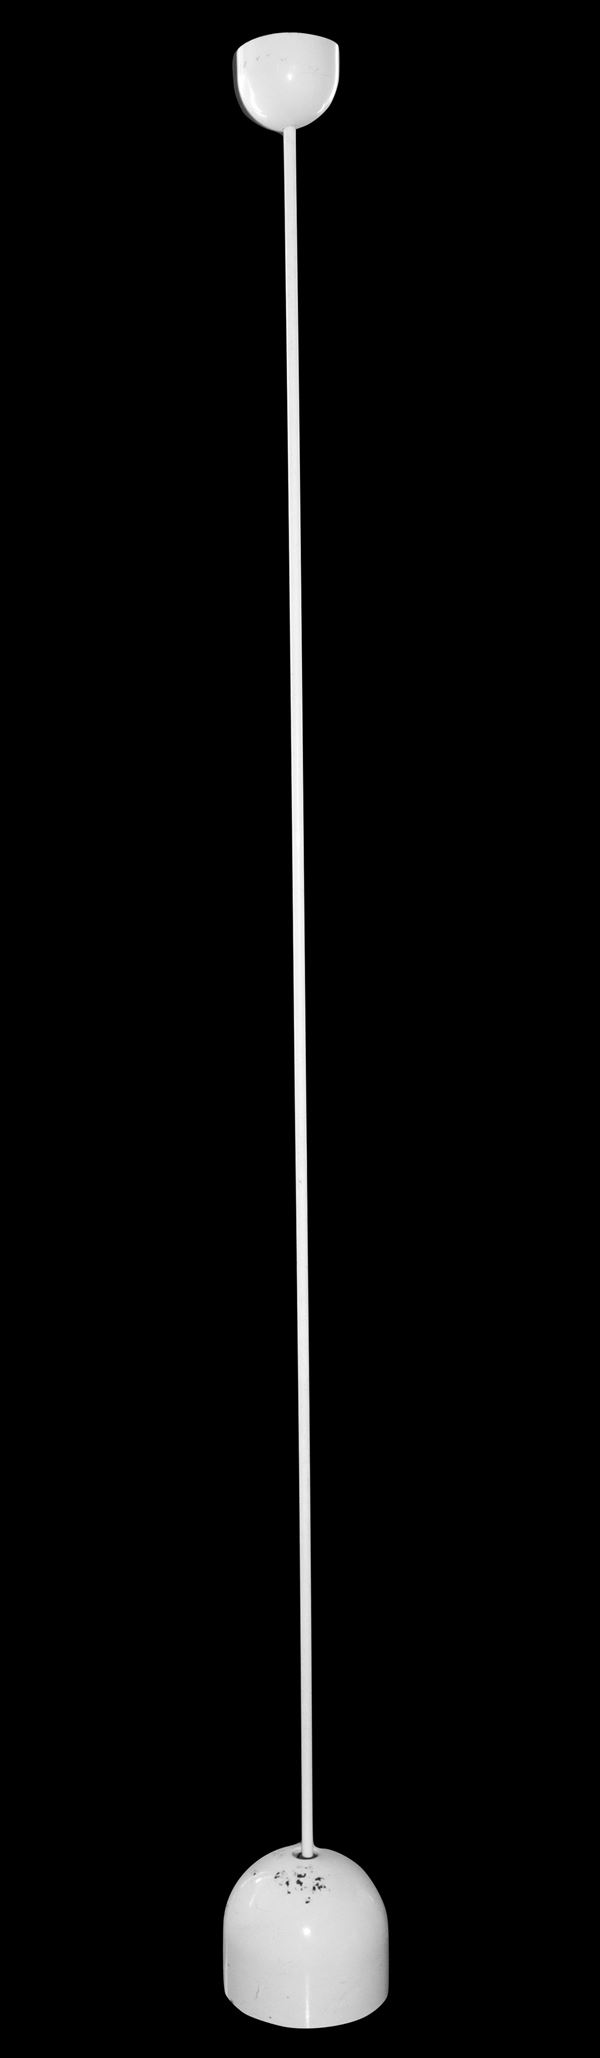 Achille Castiglioni,Prod. Flos - Piantana a stelo laccata bianco, modello Ipotenusa